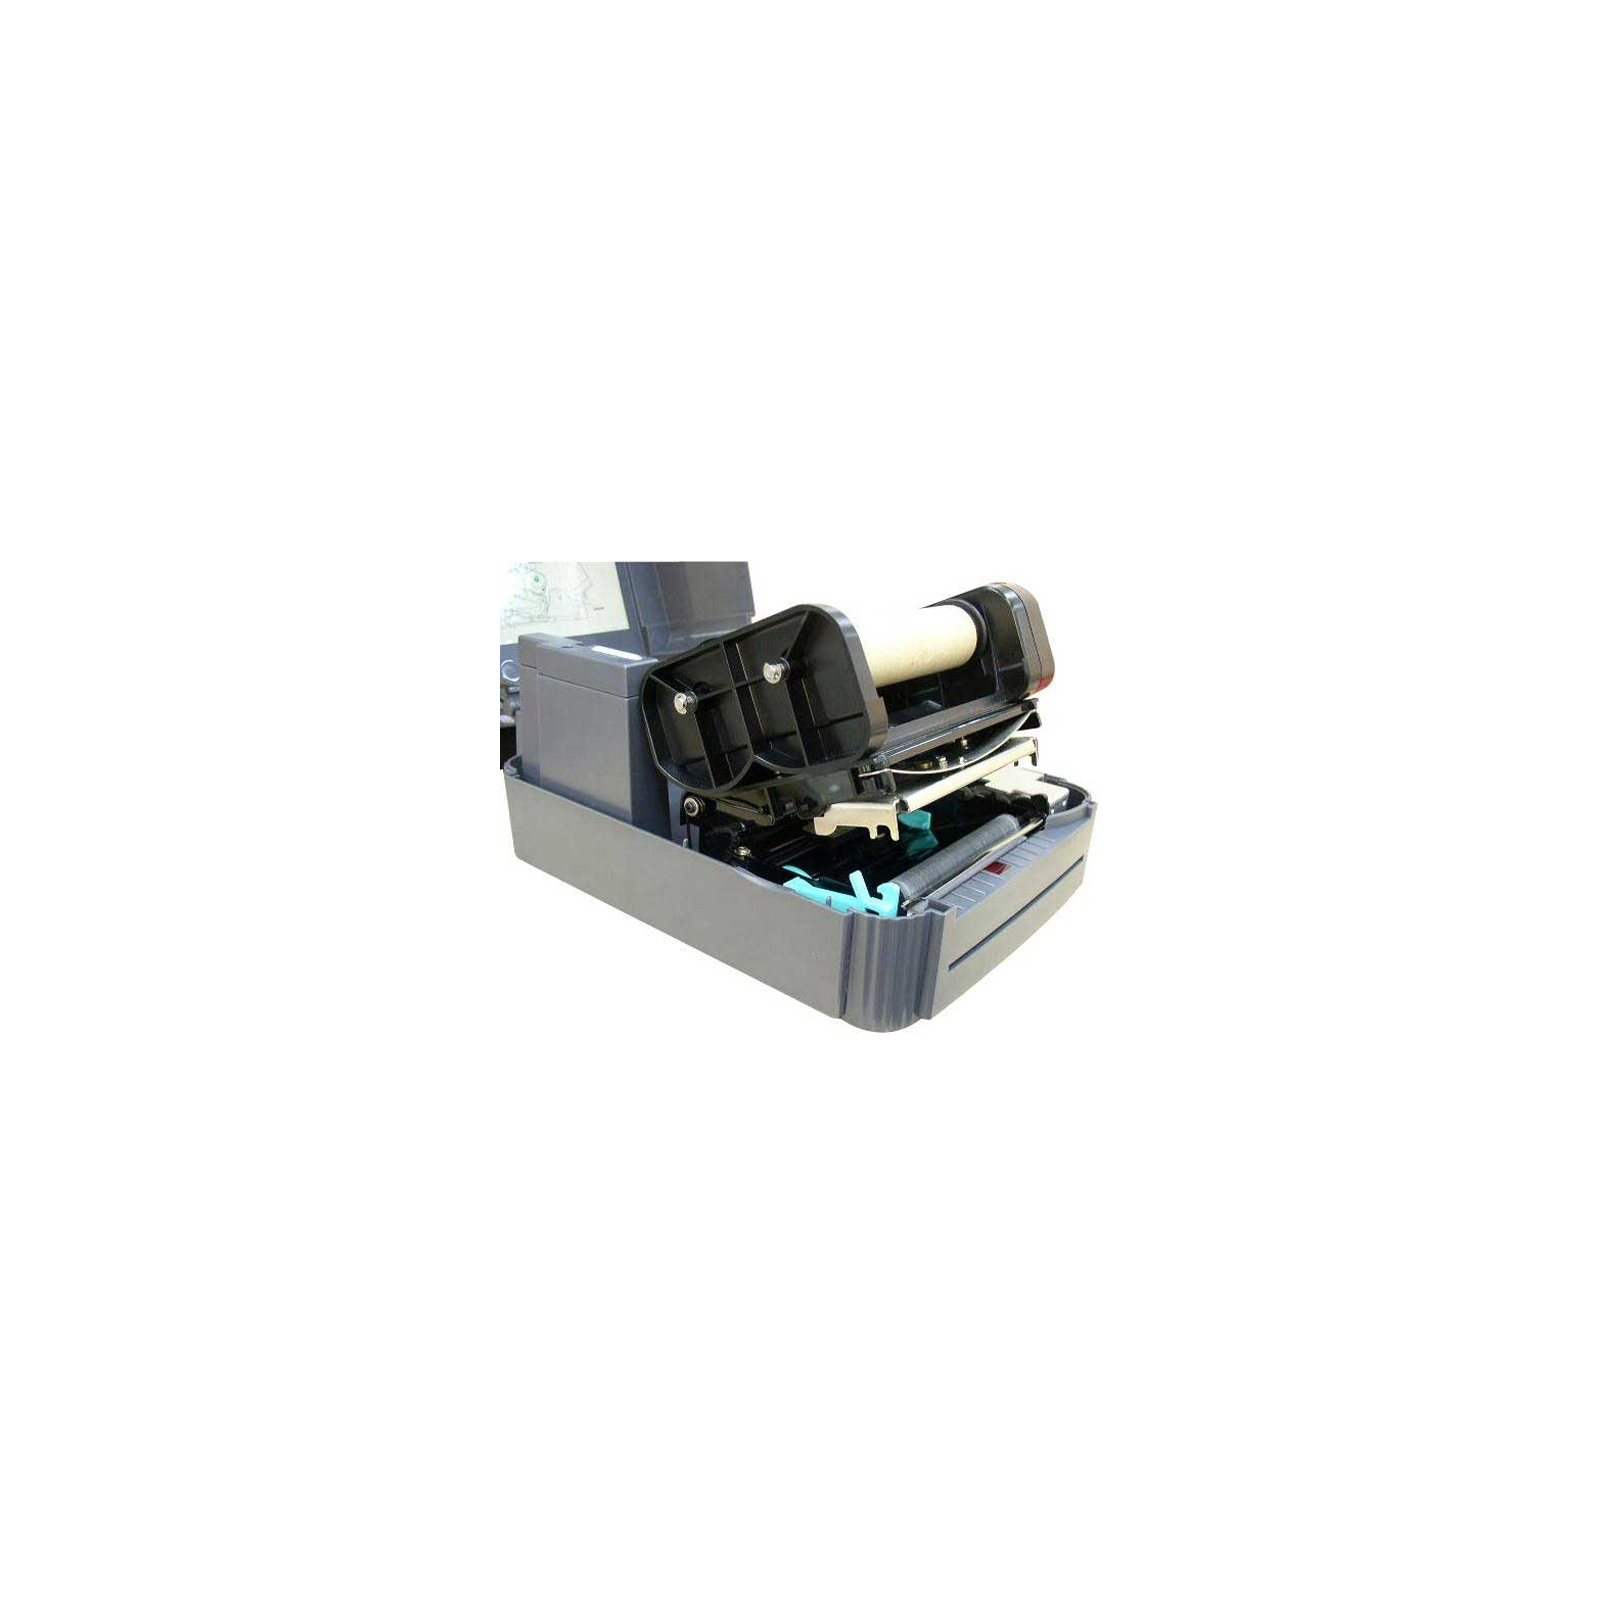 Принтер этикеток TSC TTP-342E Pro 300 dpi (TTP-342E Pro) изображение 3